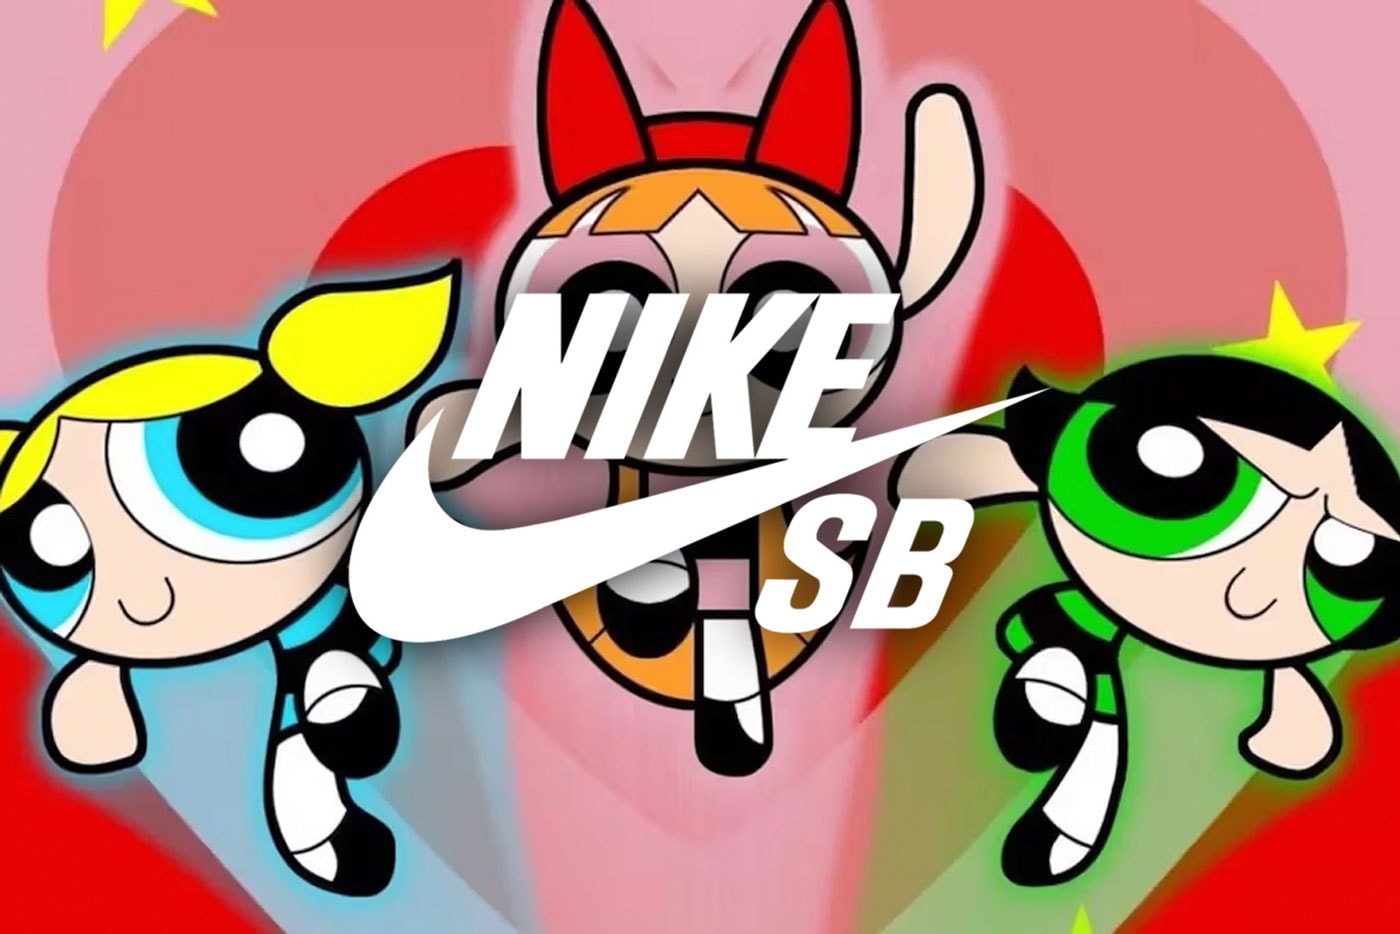 ナイキSBと『パワーパフガールズ』によるコラボレーションが実現？ Nike SB Is Reportedly Working on Powerpuff Girls Collaboration rumors swoosh dunk low reboot live action news info